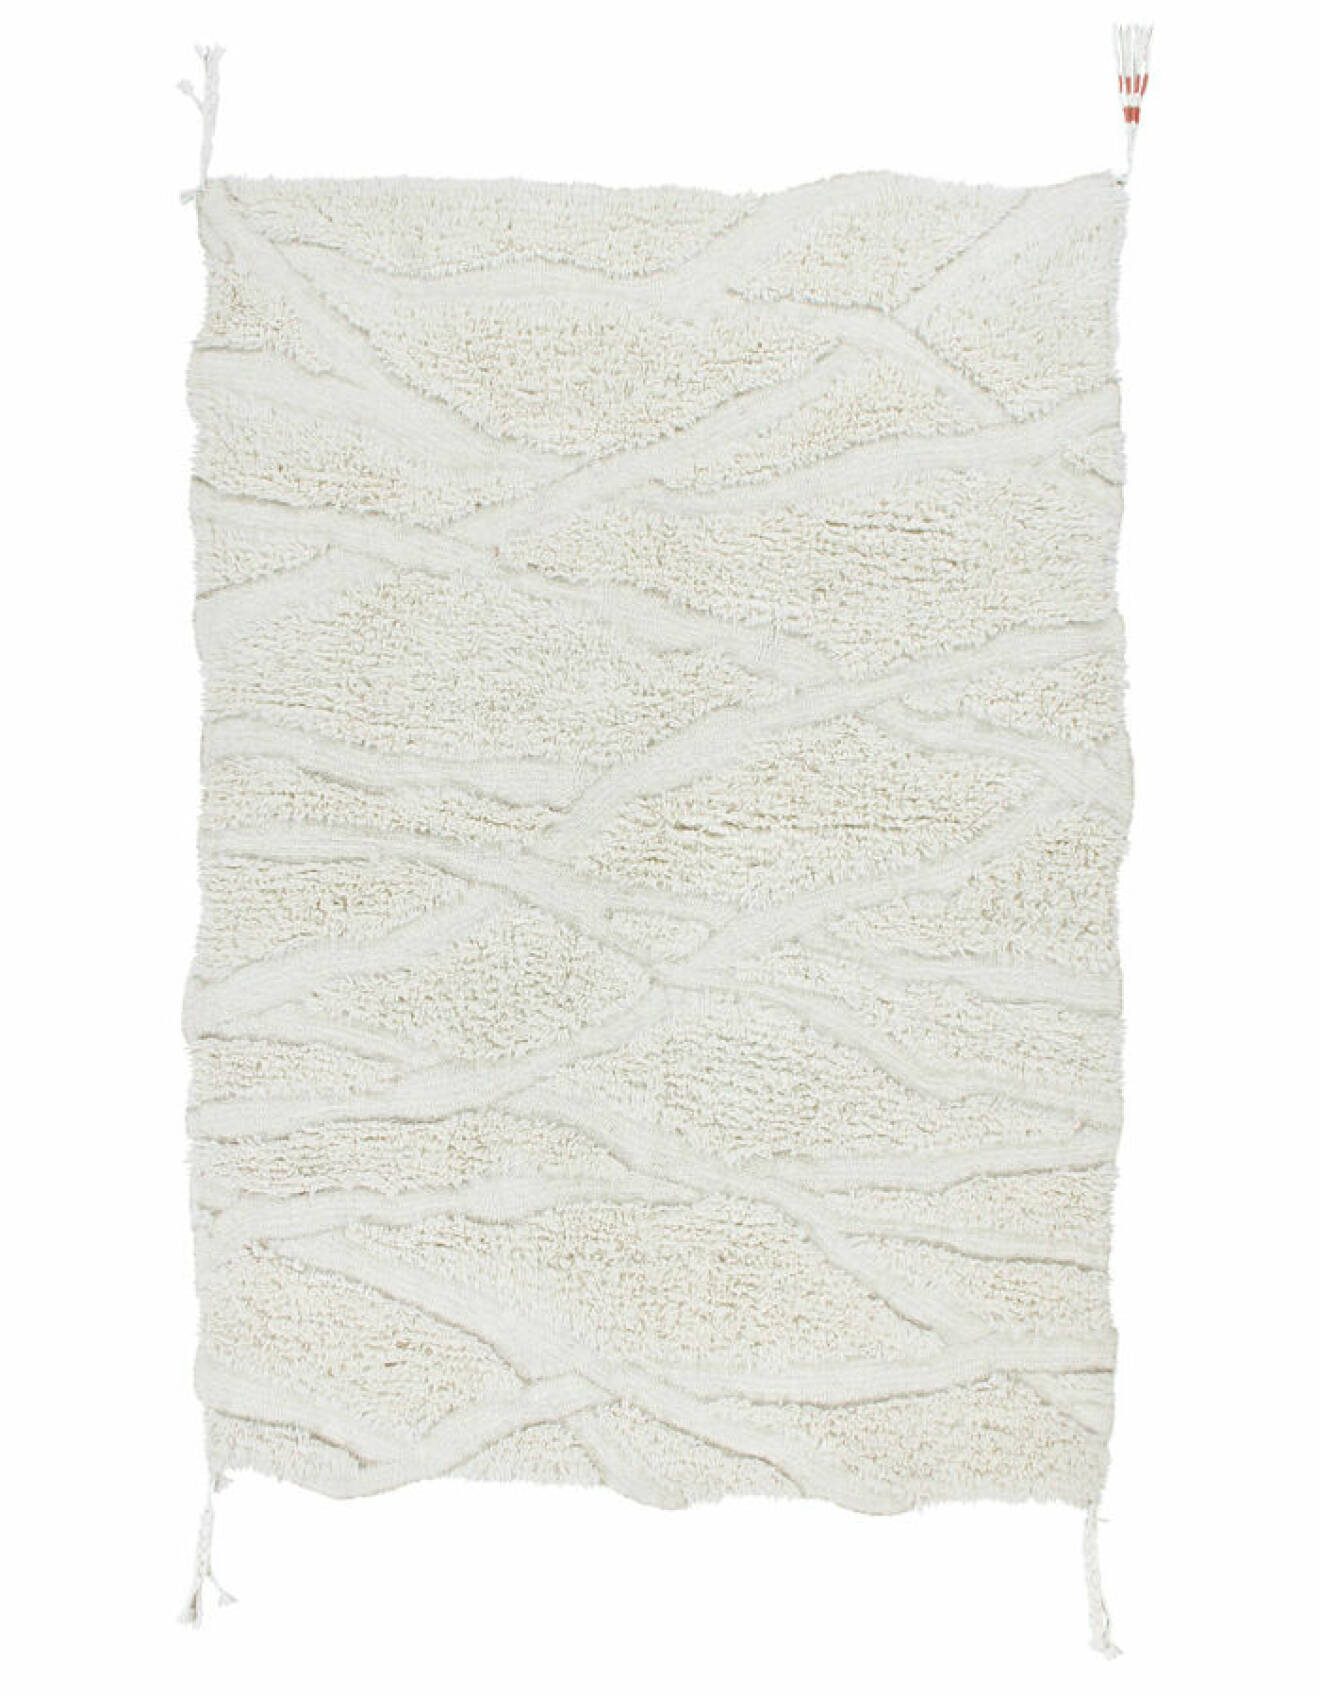 Elsa billgren inredning – vit tuftad matta från Lorena Canals/H&amp;M Home